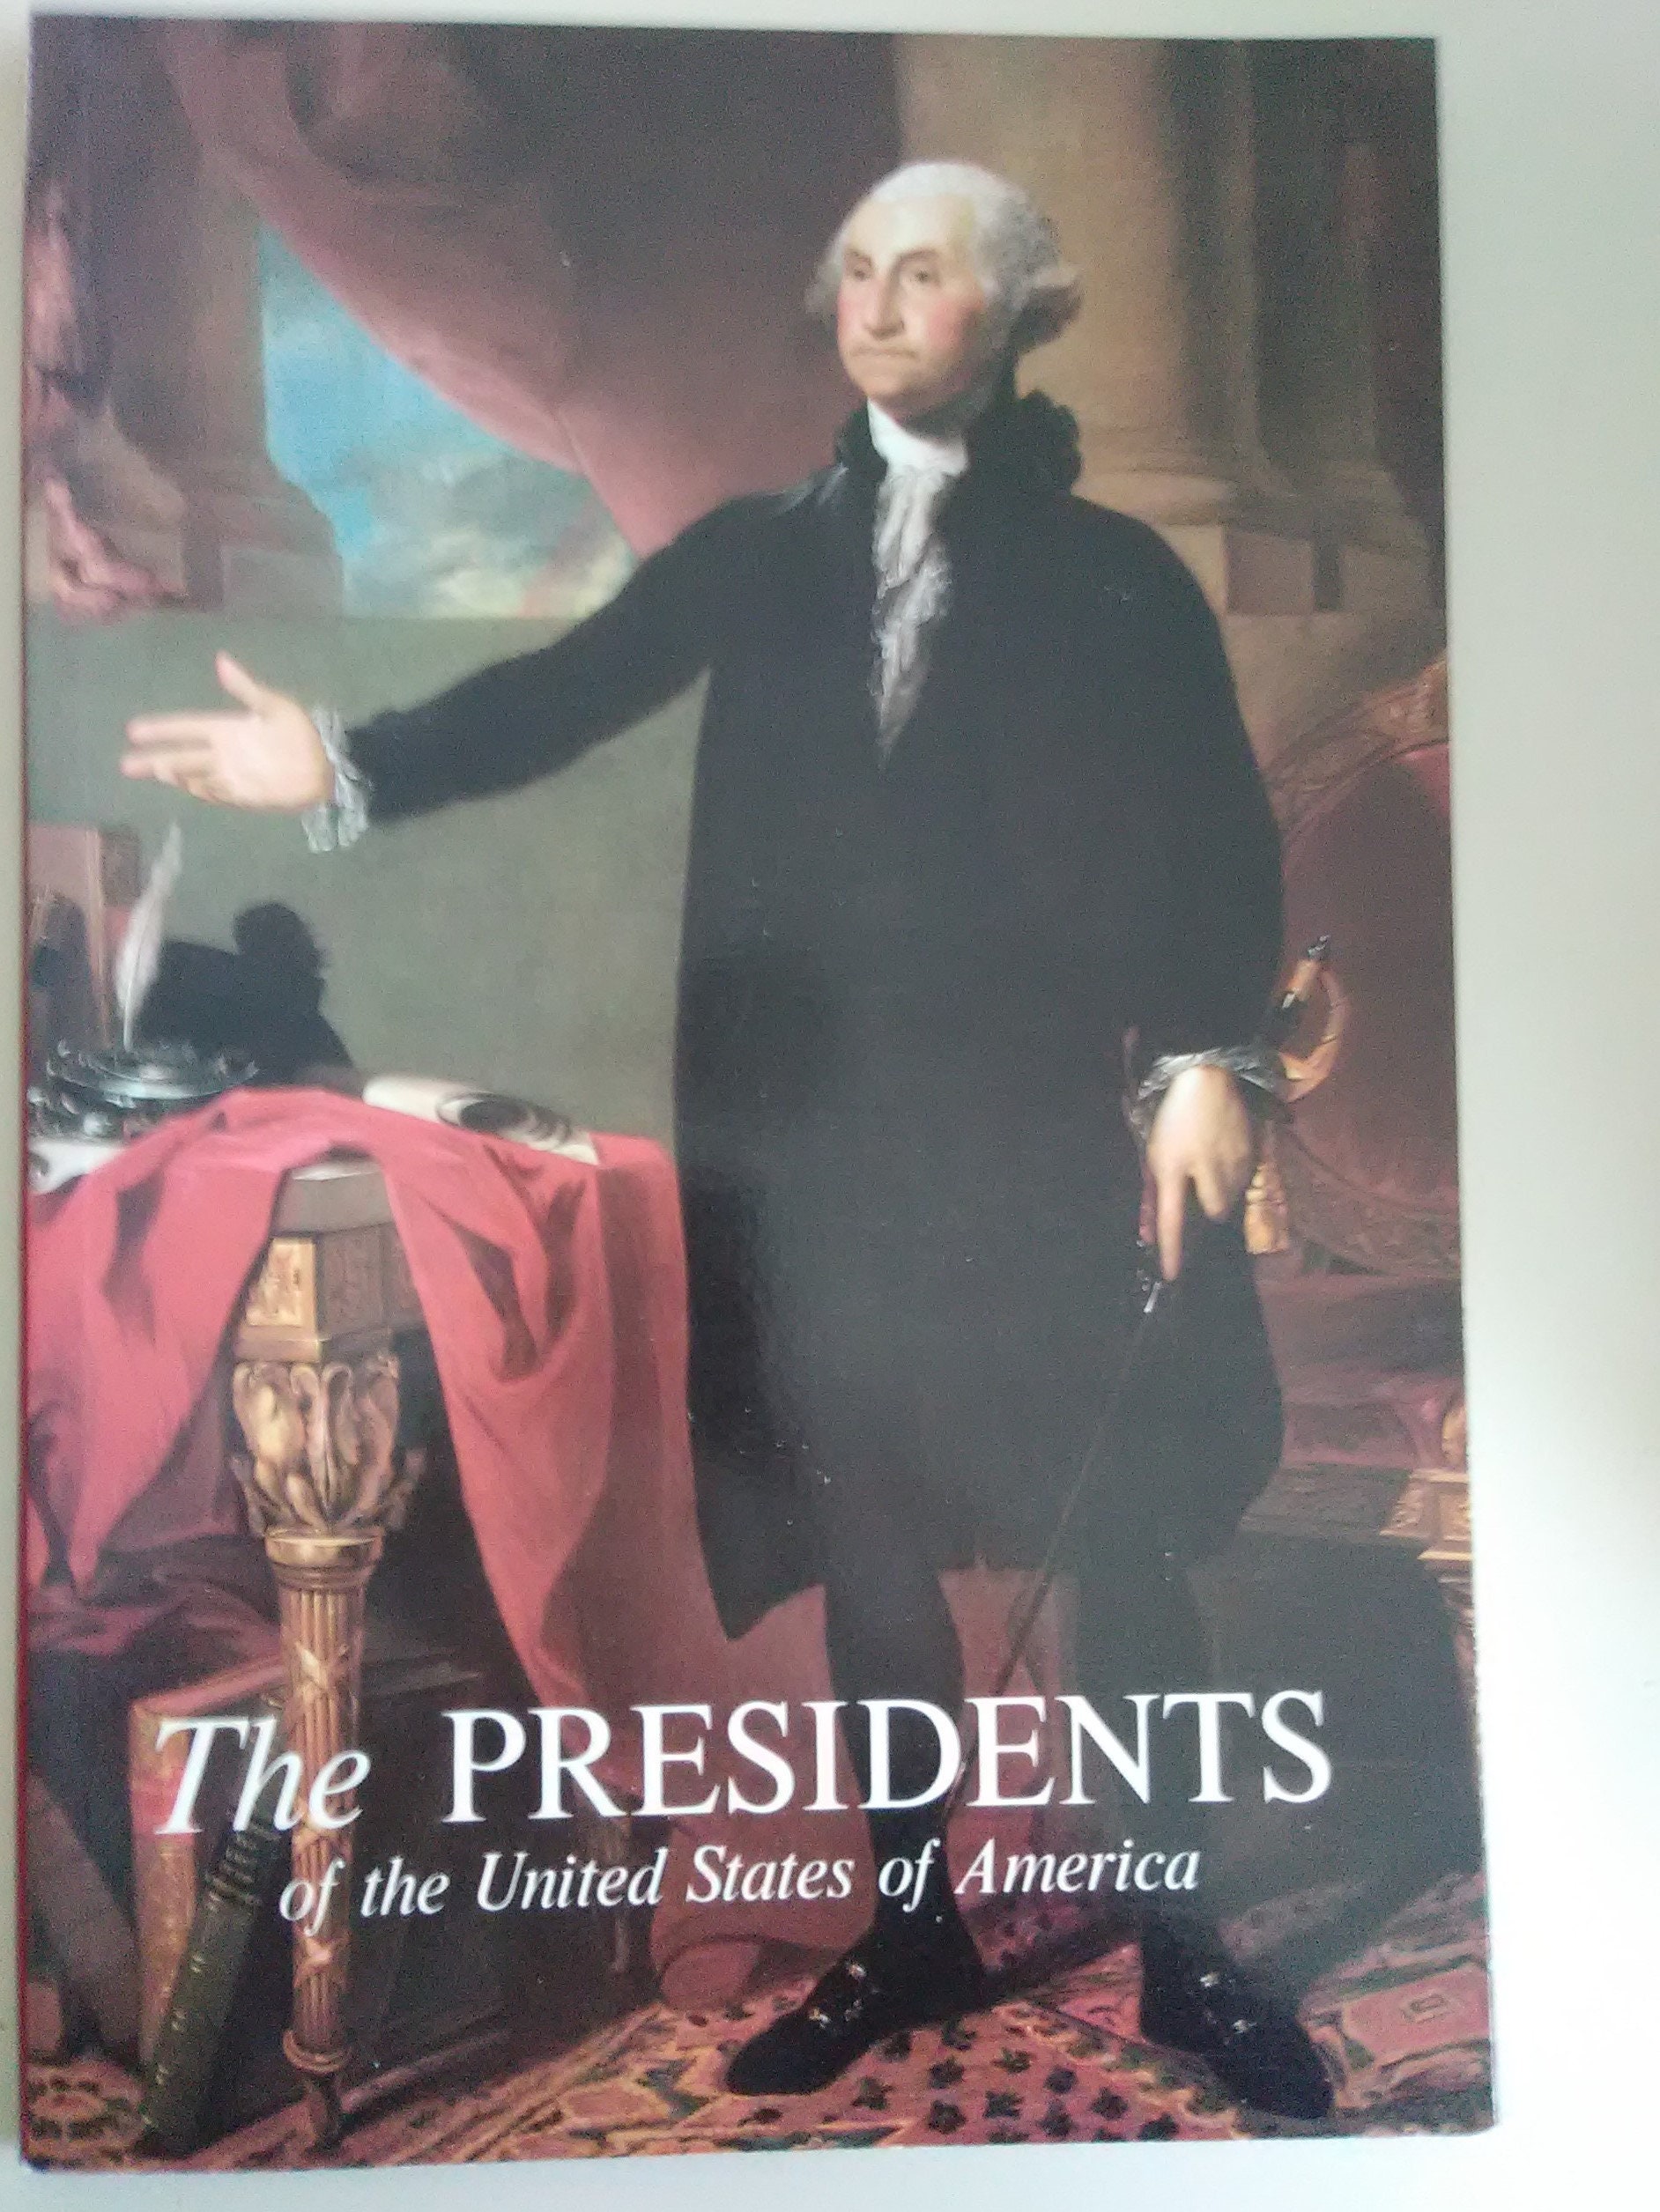 Meet the Presidents - WHHA (en-US)